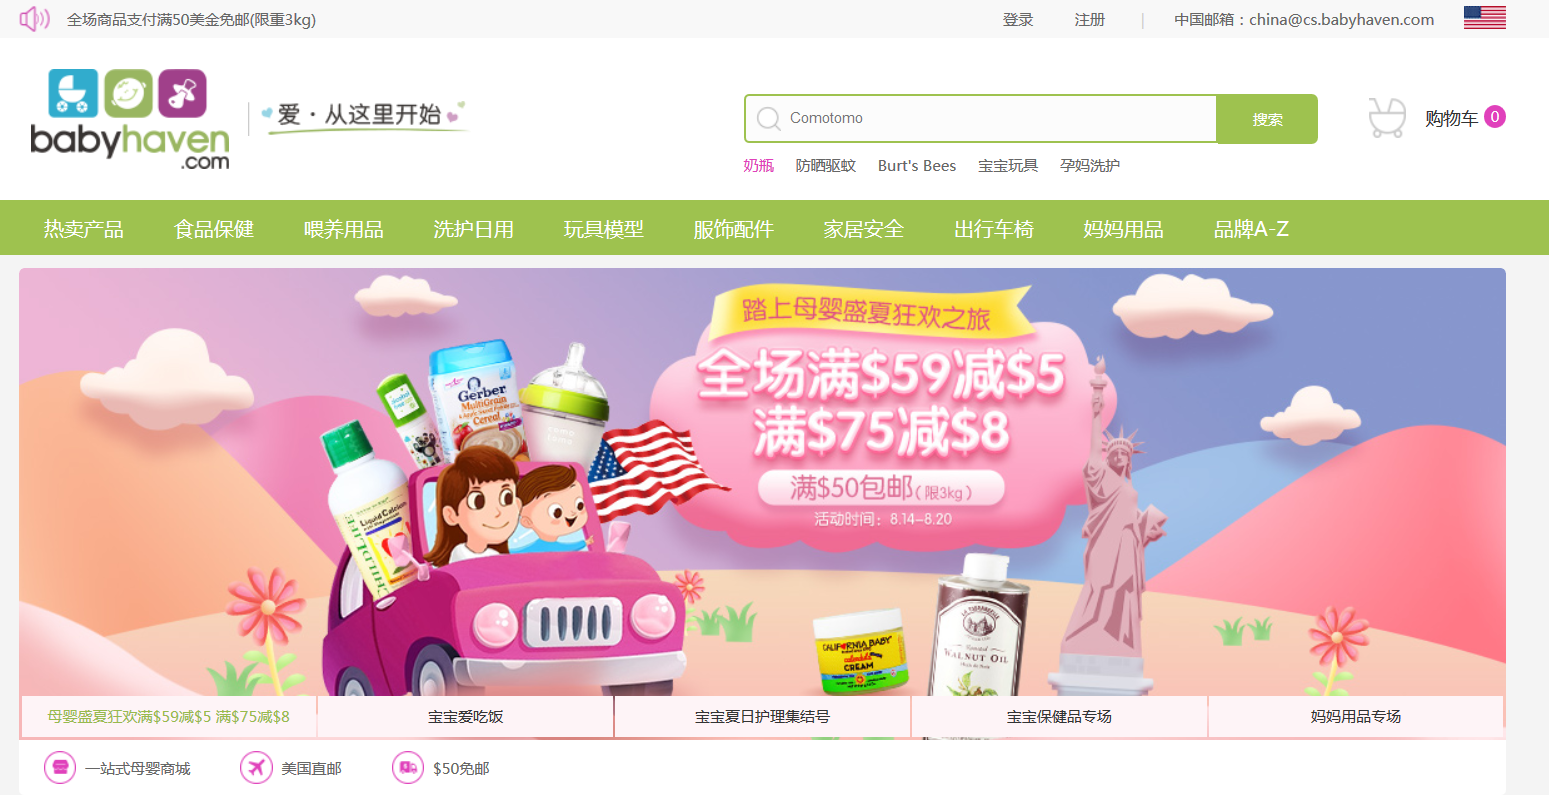 美国婴儿用品零售商Babyhaven今年在中国推出了一个电子商务网站，以吸引中国千禧一代的妈妈们。